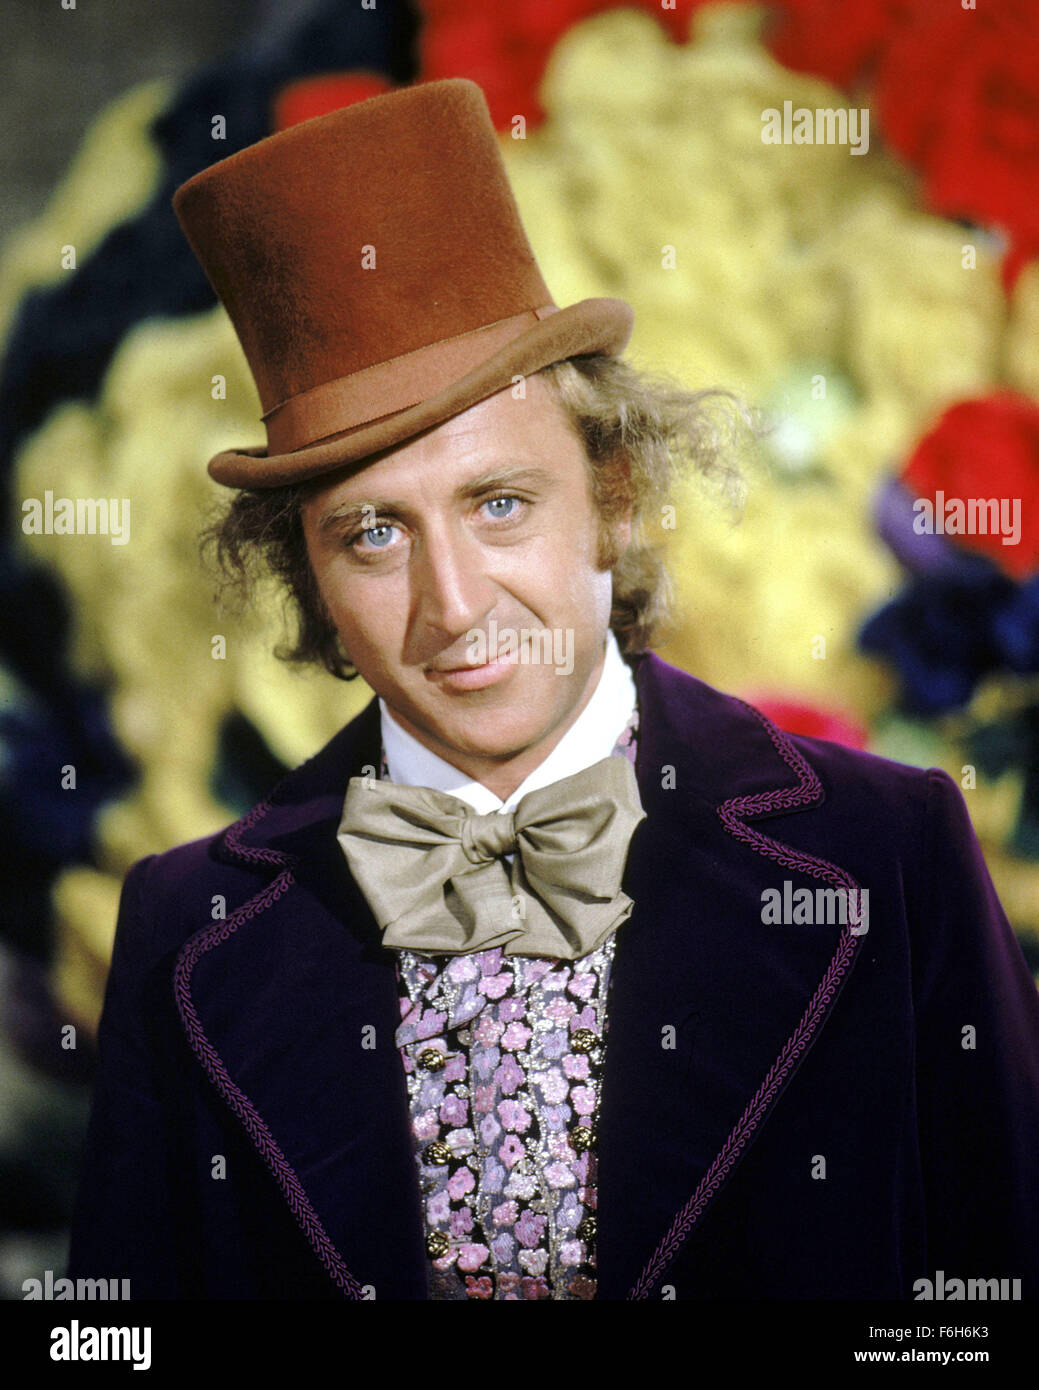 Redécouvrez la chocolaterie Wonka de Roald Dahl